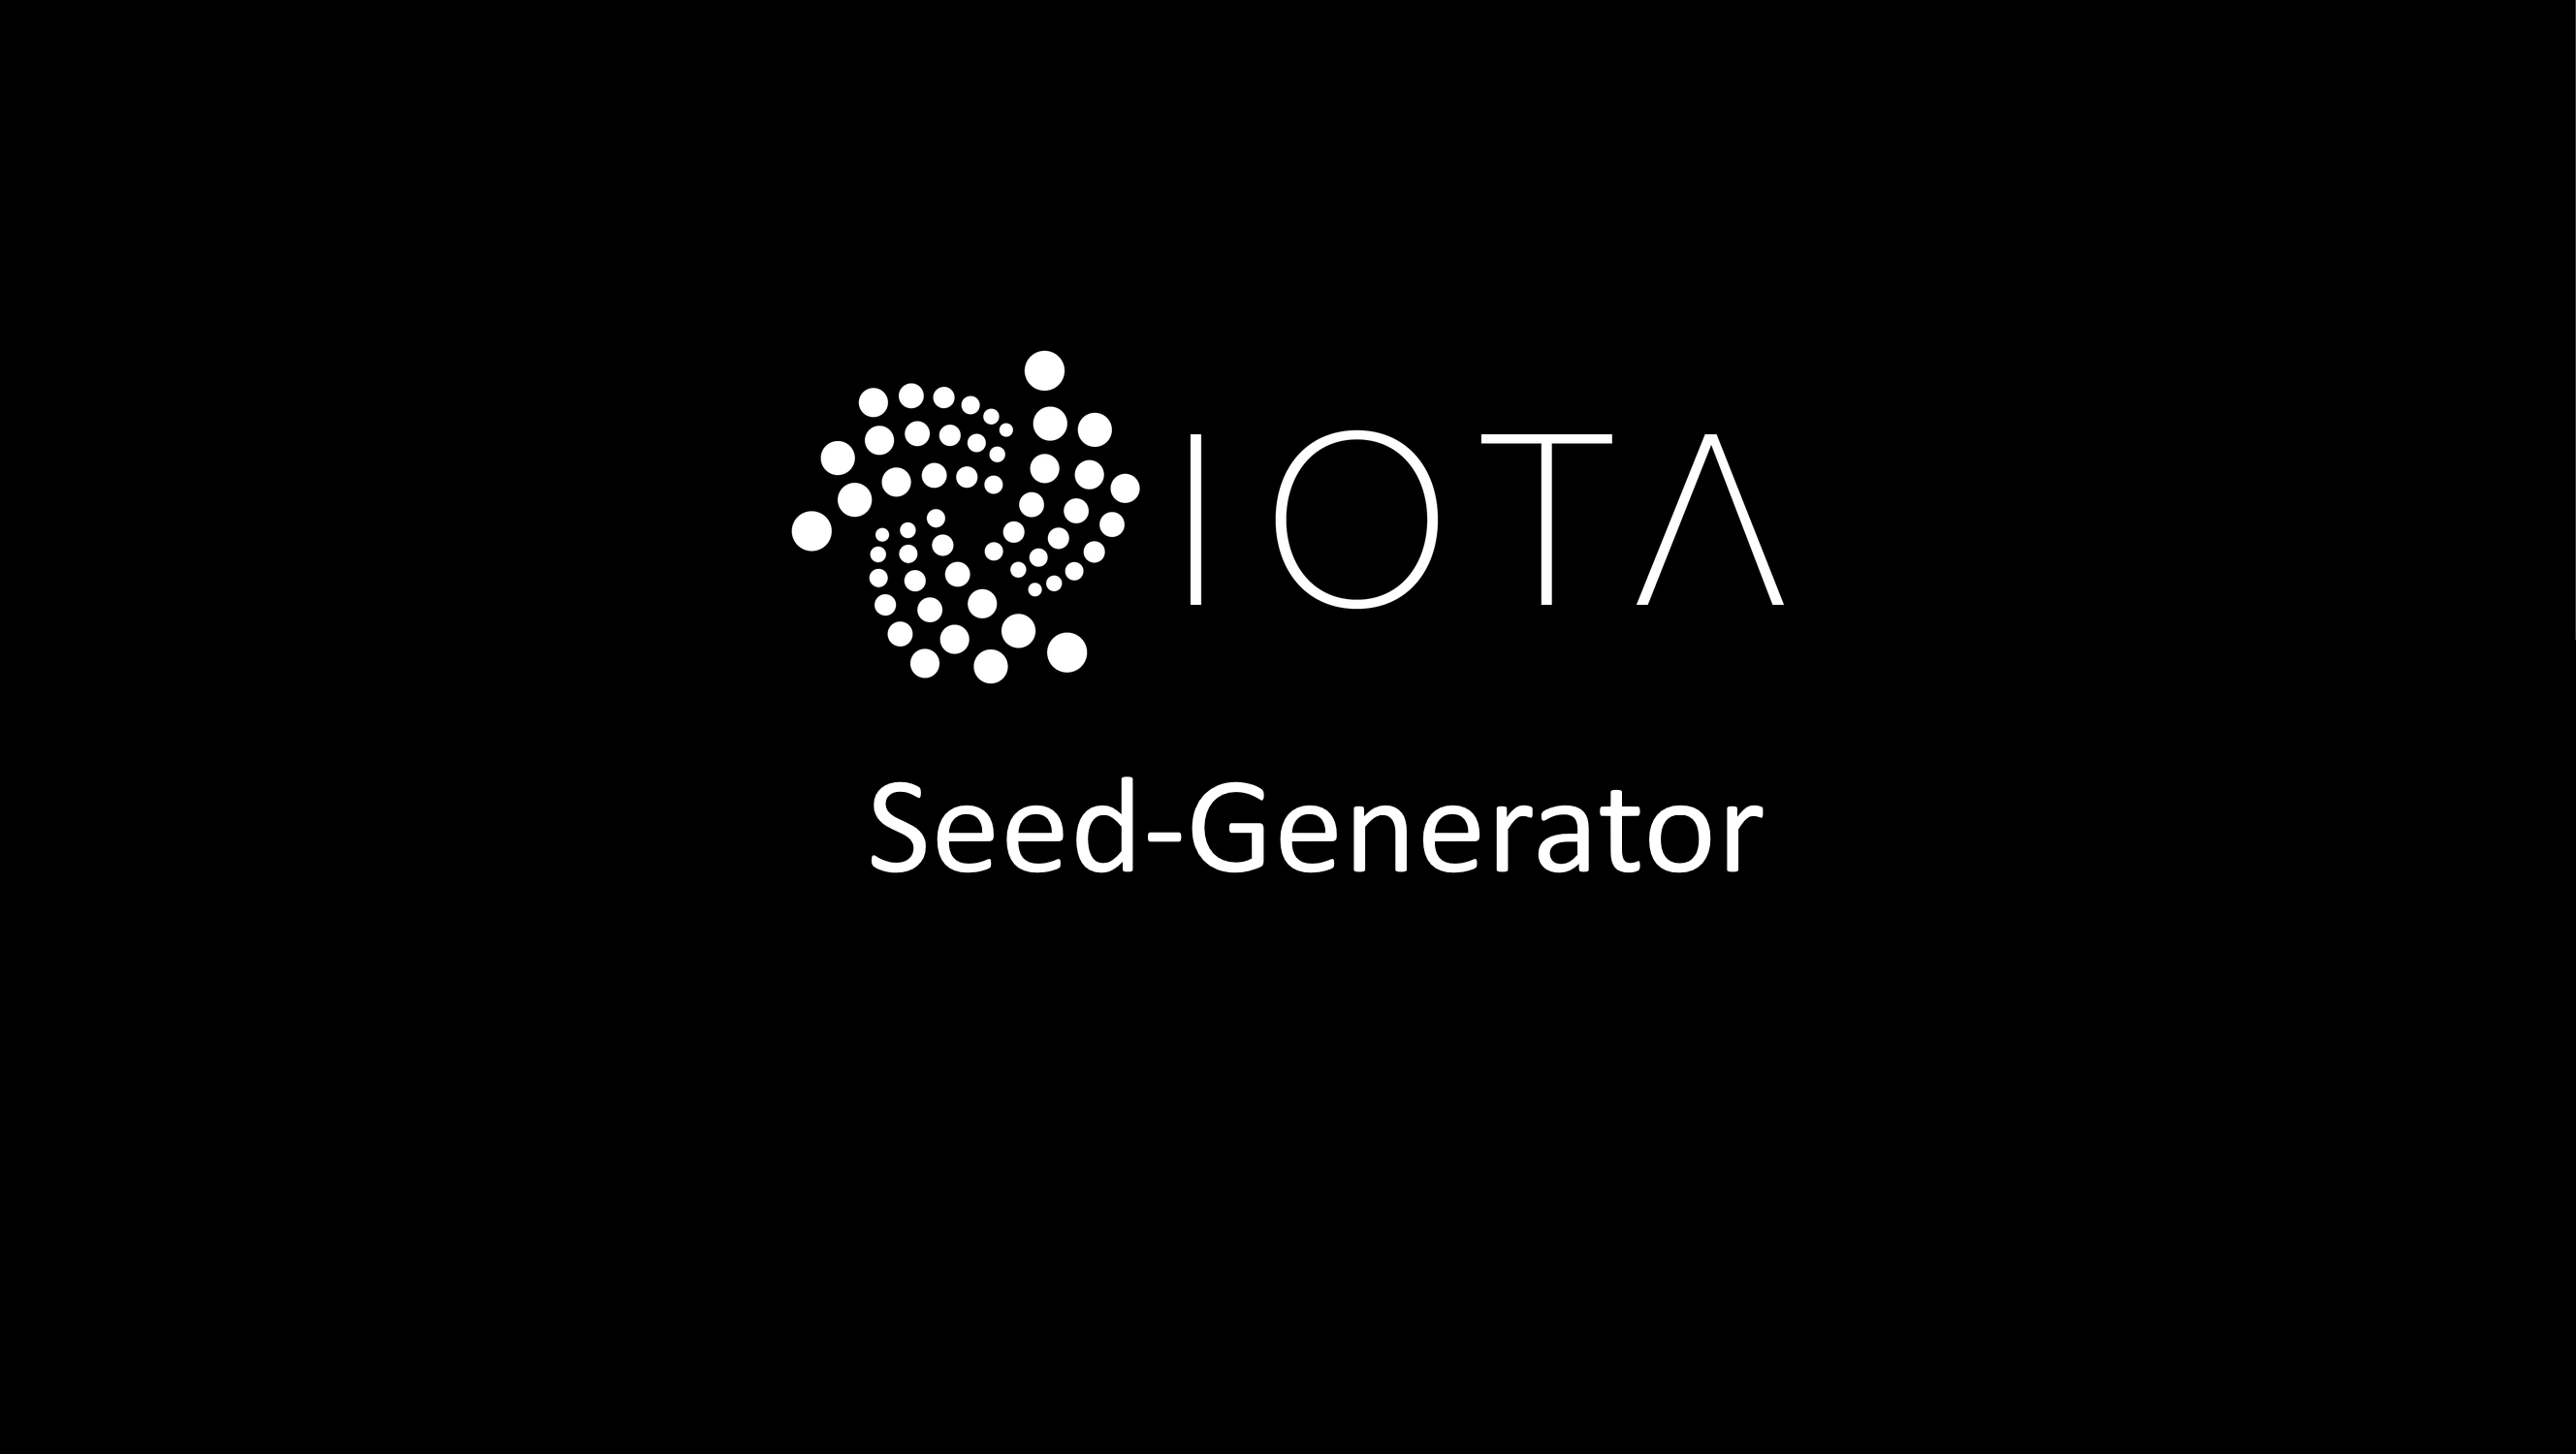 IOTA Seed-Generator